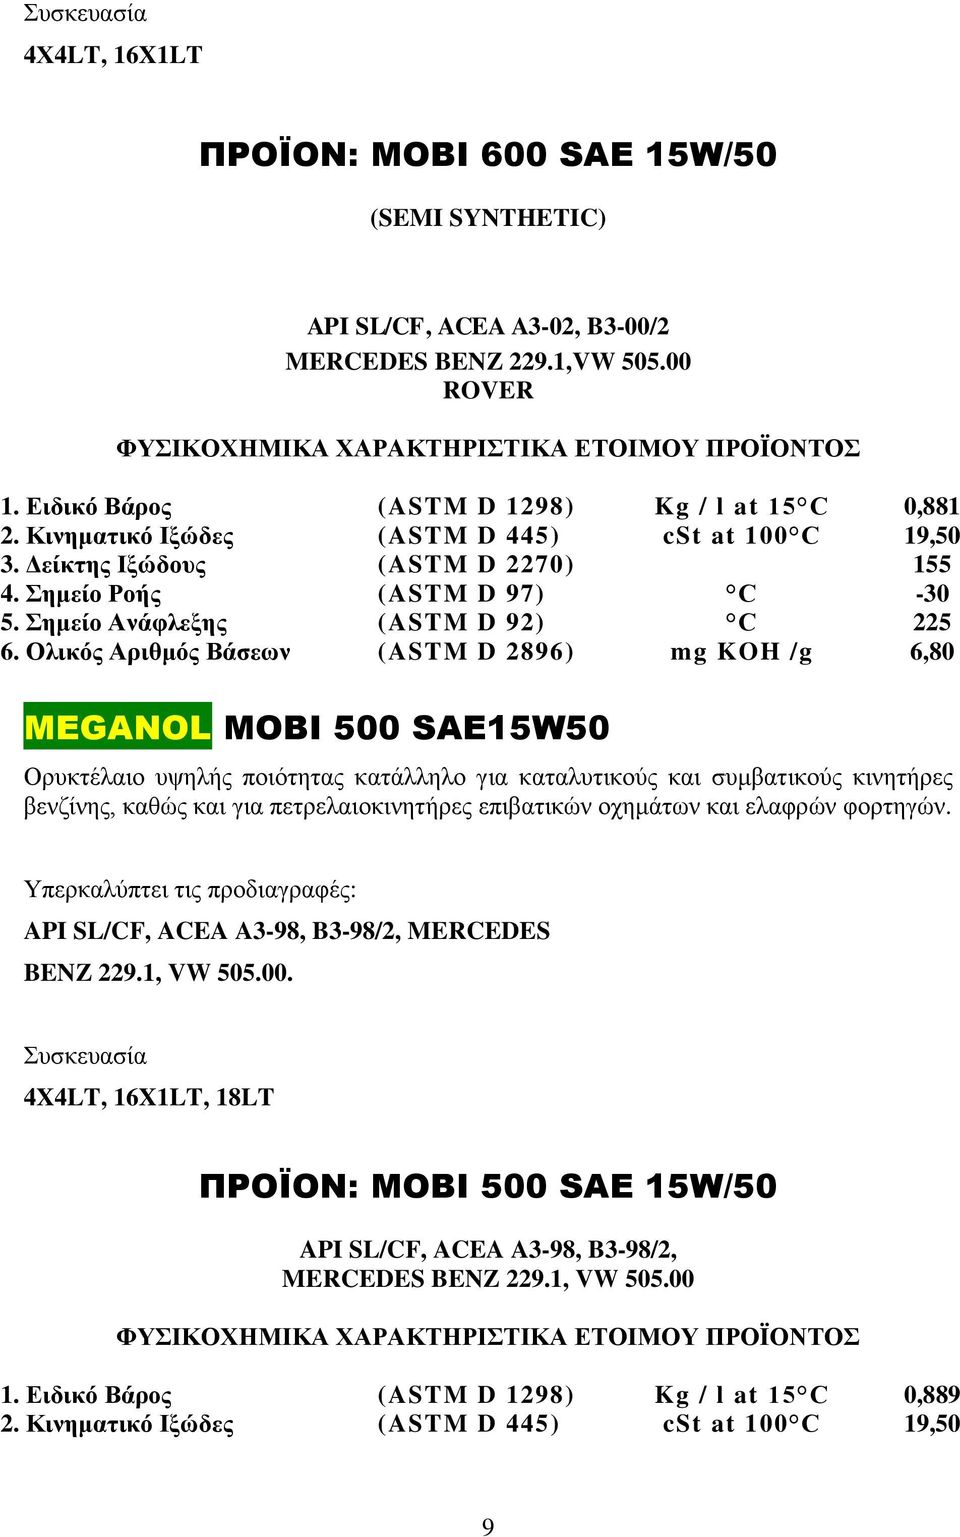 Ολικός Αριθμός Βάσεων (ASTM D 2896) mg KOH /g 6,80 MEGANOL MOBI 500 SAE15W50 Ορυκτέλαιο υψηλής ποιότητας κατάλληλο για καταλυτικούς και συμβατικούς κινητήρες βενζίνης, καθώς και για